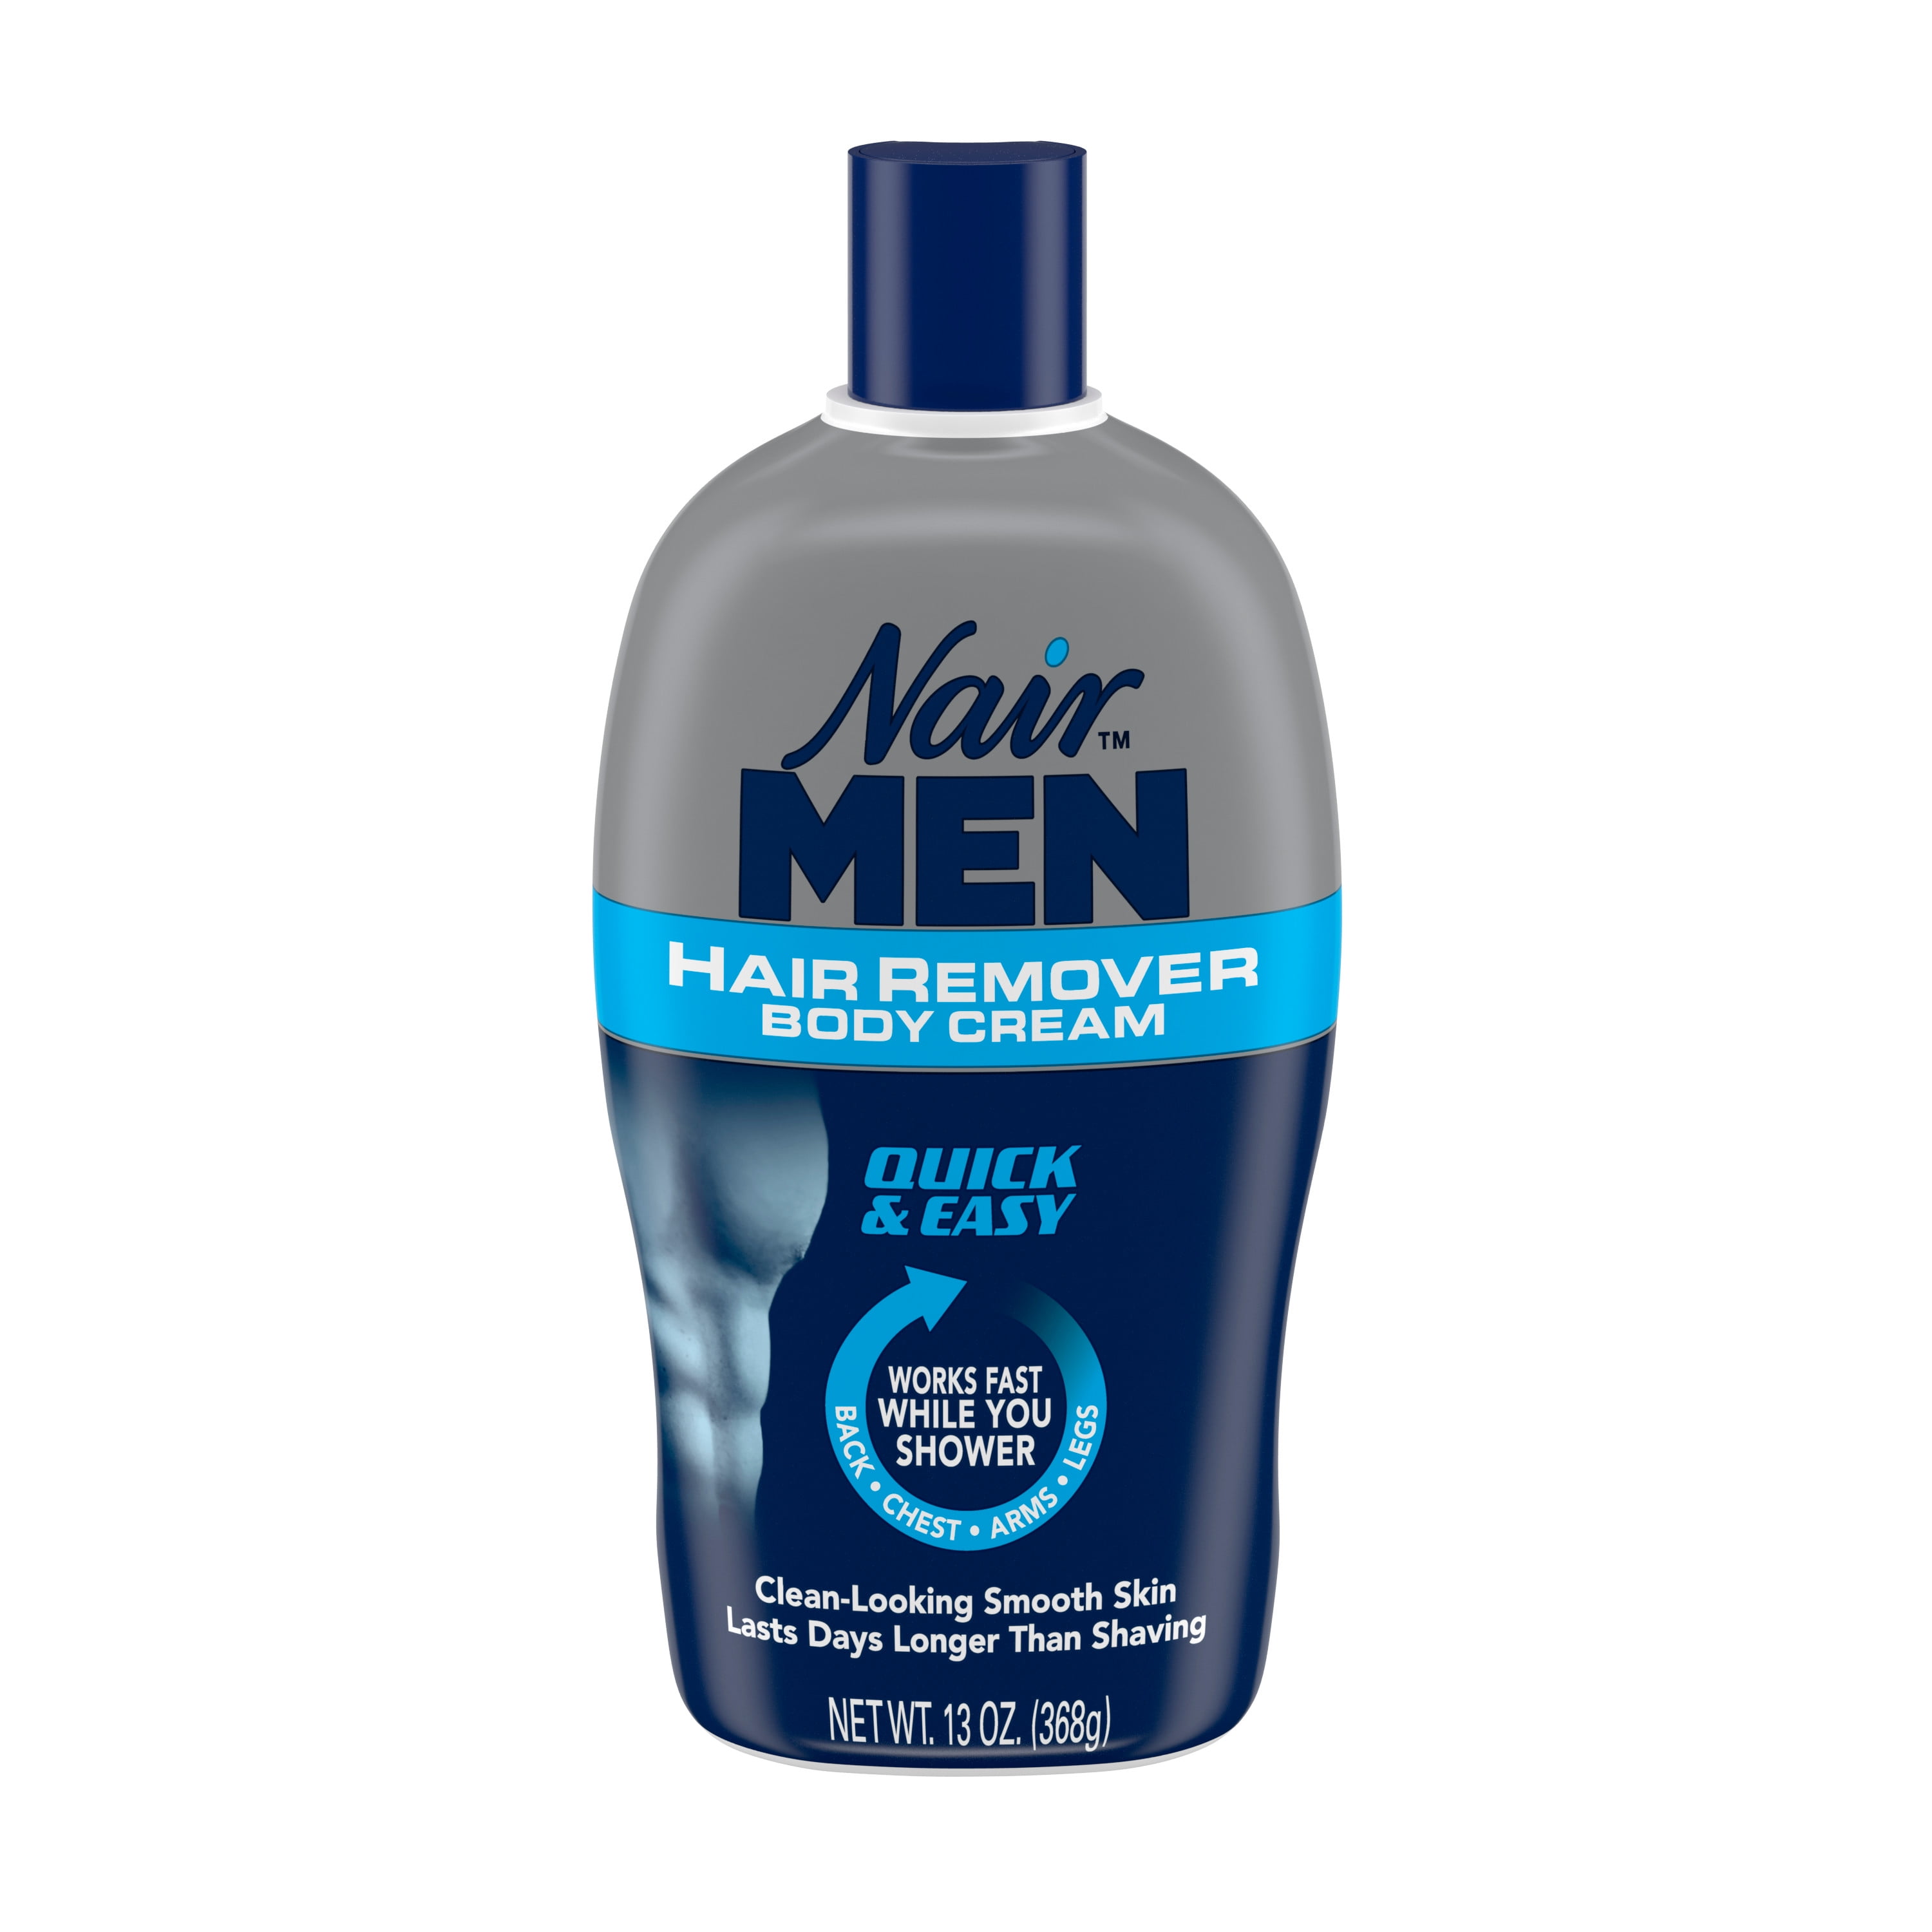 Nair Men Hair Remover Body Cream, Body Hair Remover for Men, 13 Oz Bottle -  